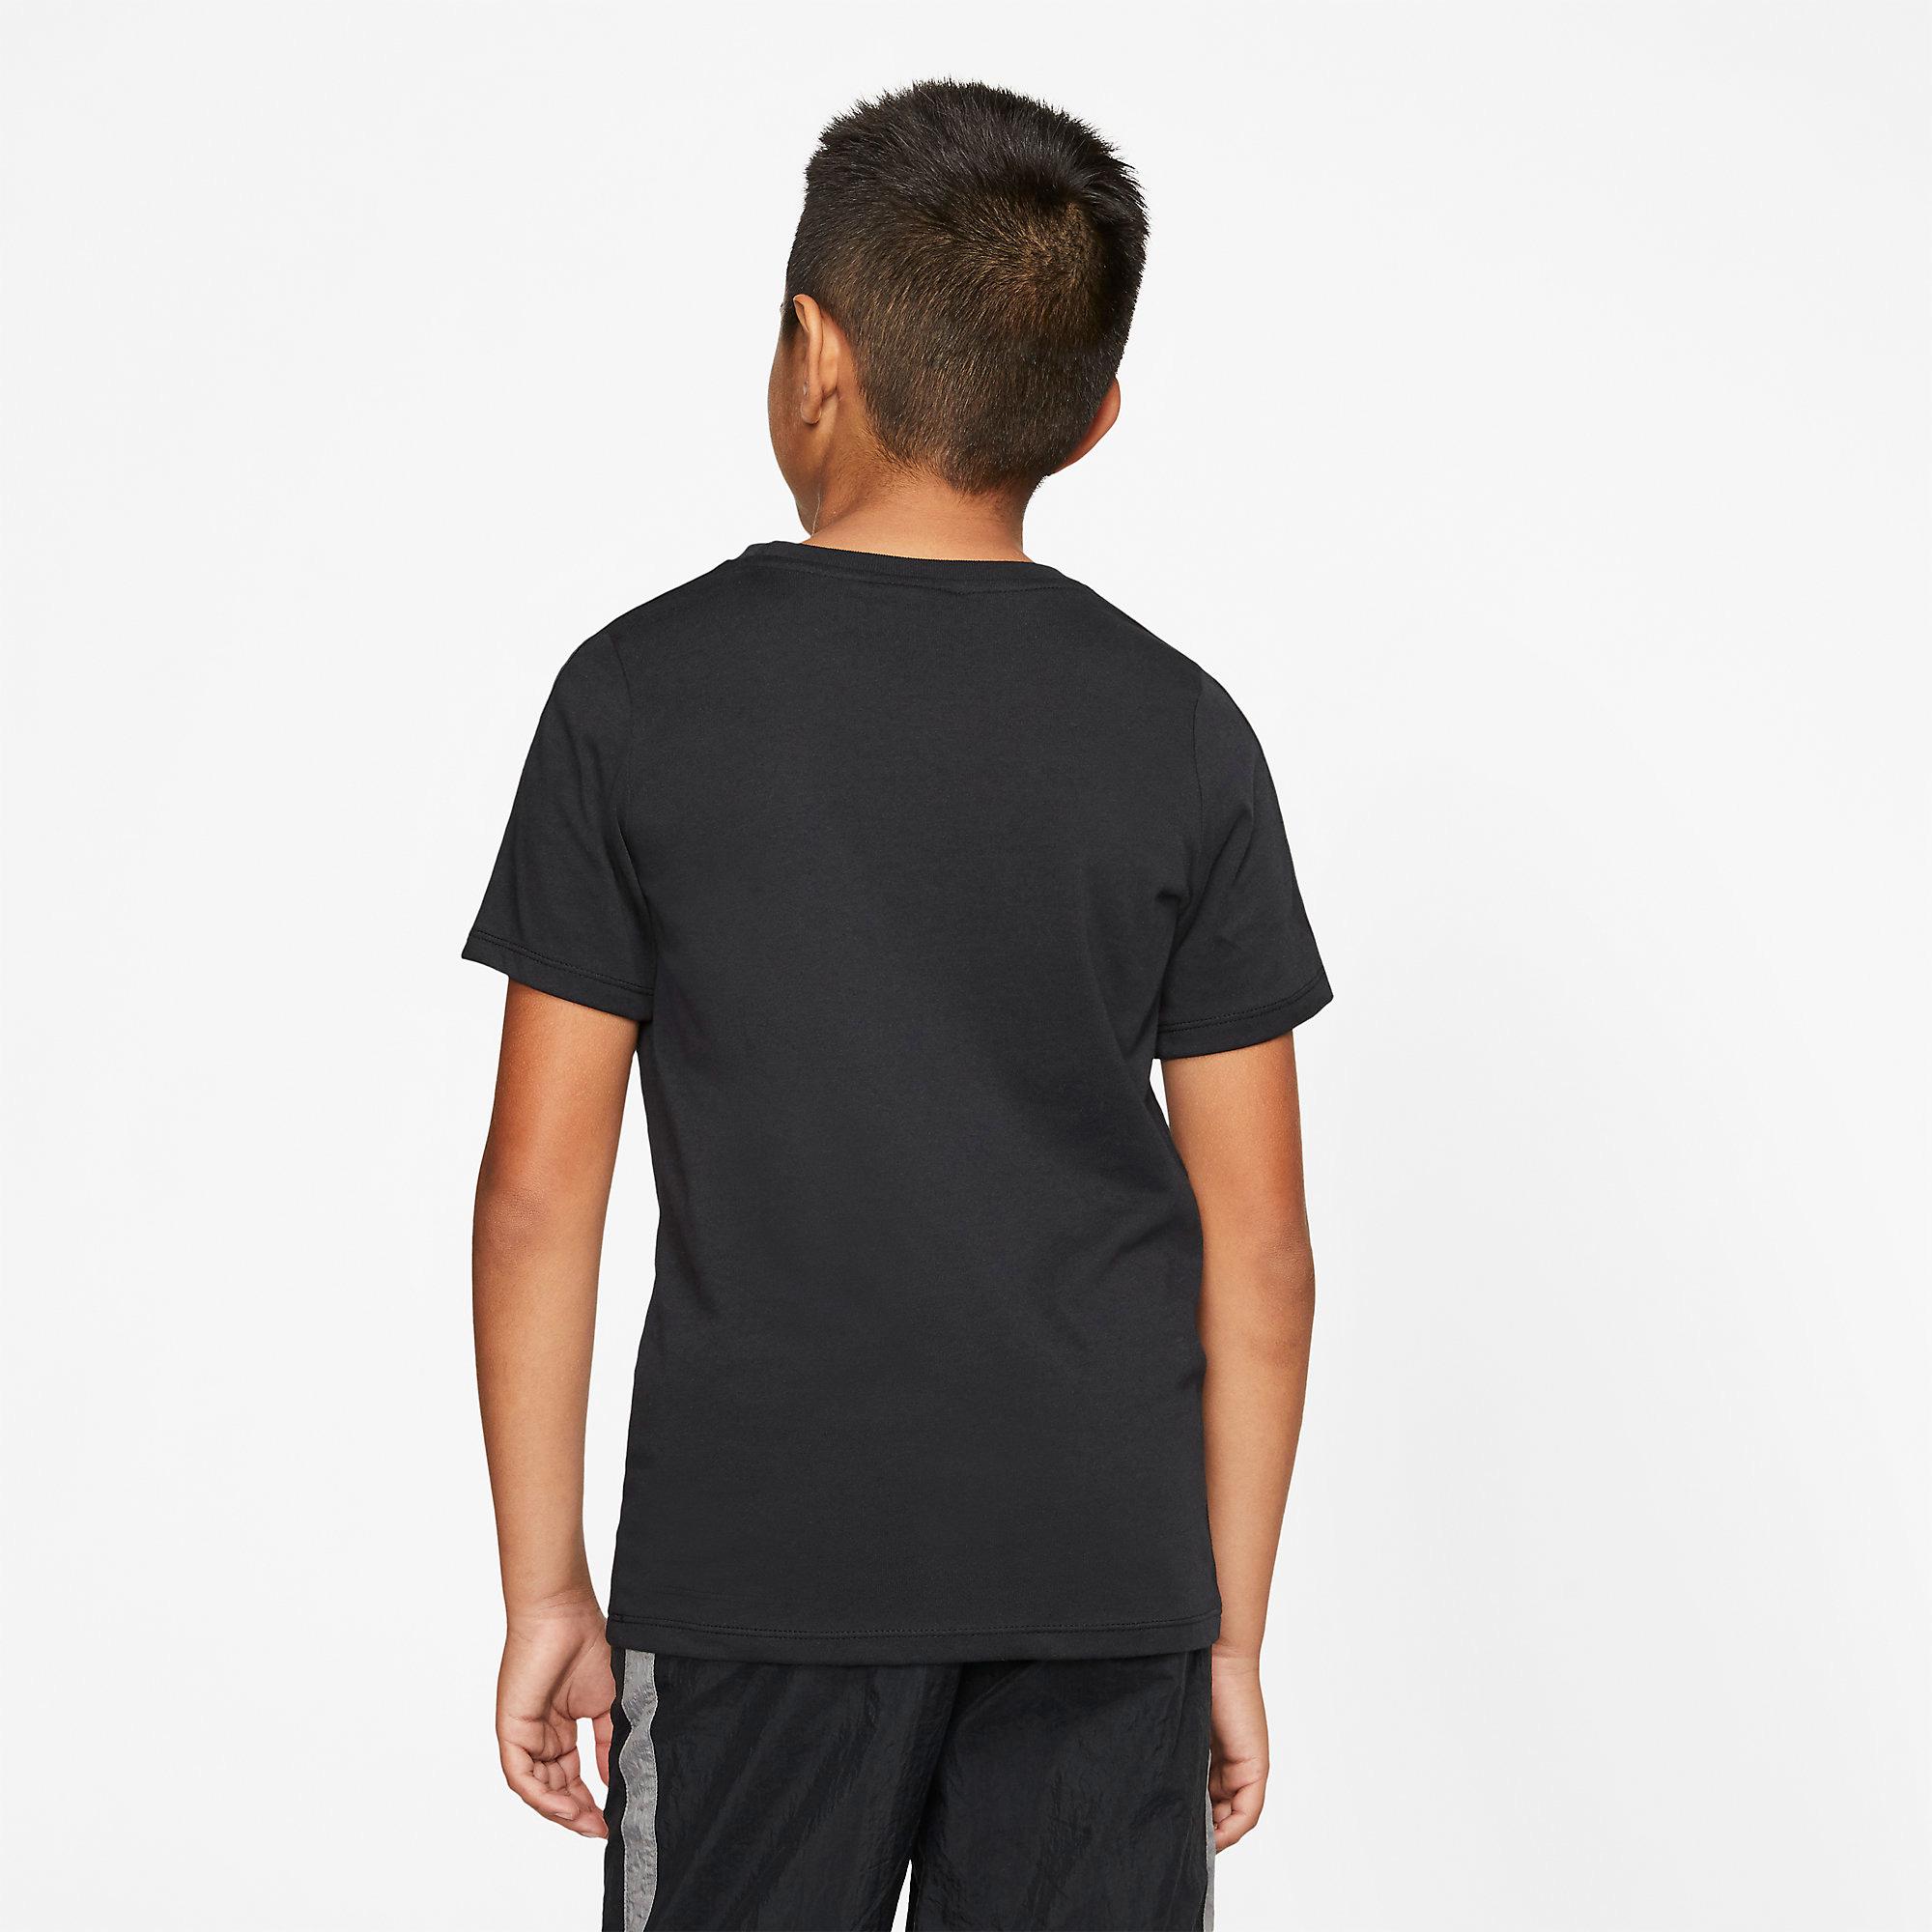 Nike Boys Sportswear T-Shirt - Black/Metallic Gold - Tennisnuts.com